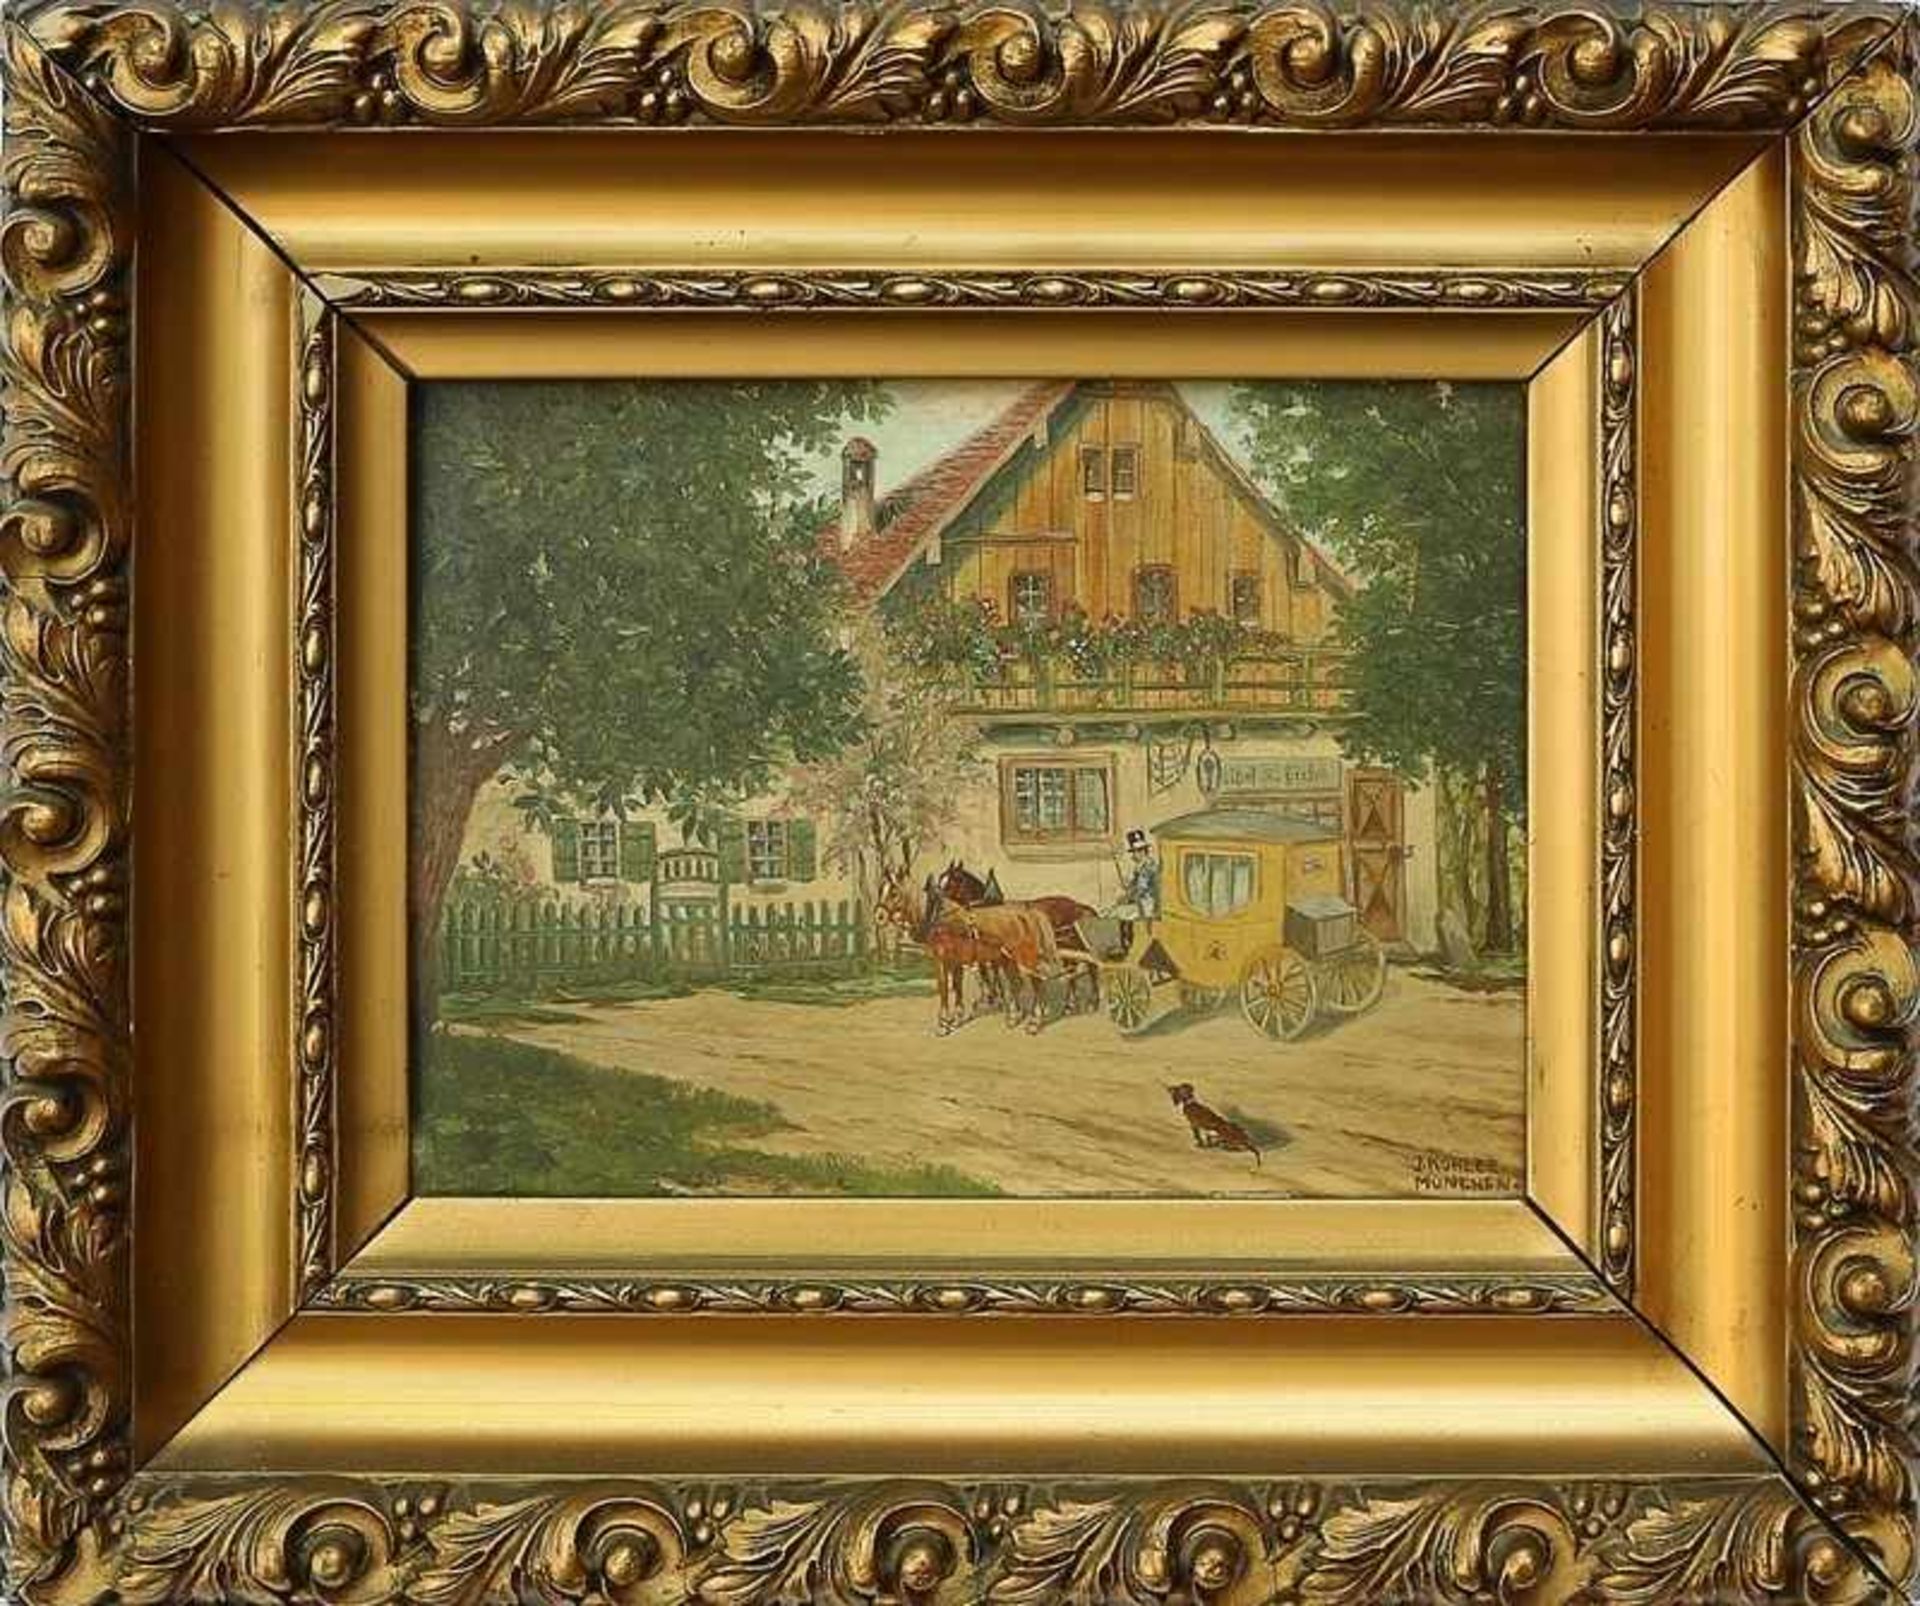 Kohler, Josef um 1920, "Postkutsche vor dem Wirtshaus", Öl/Holz, harmonische Farbpalette, feiner